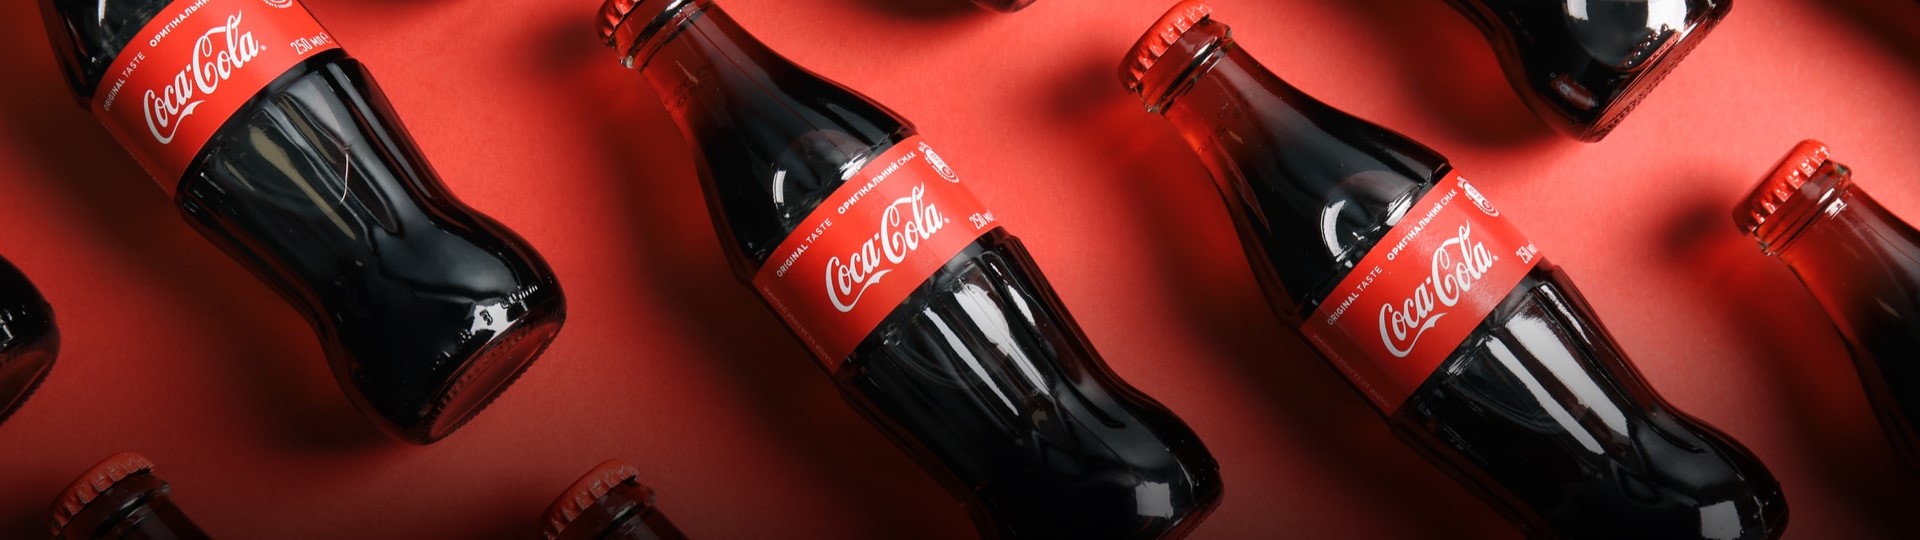 Americká nápojová skupina Coca-Cola zvýšila čtvrtletní zisk o 48 procent